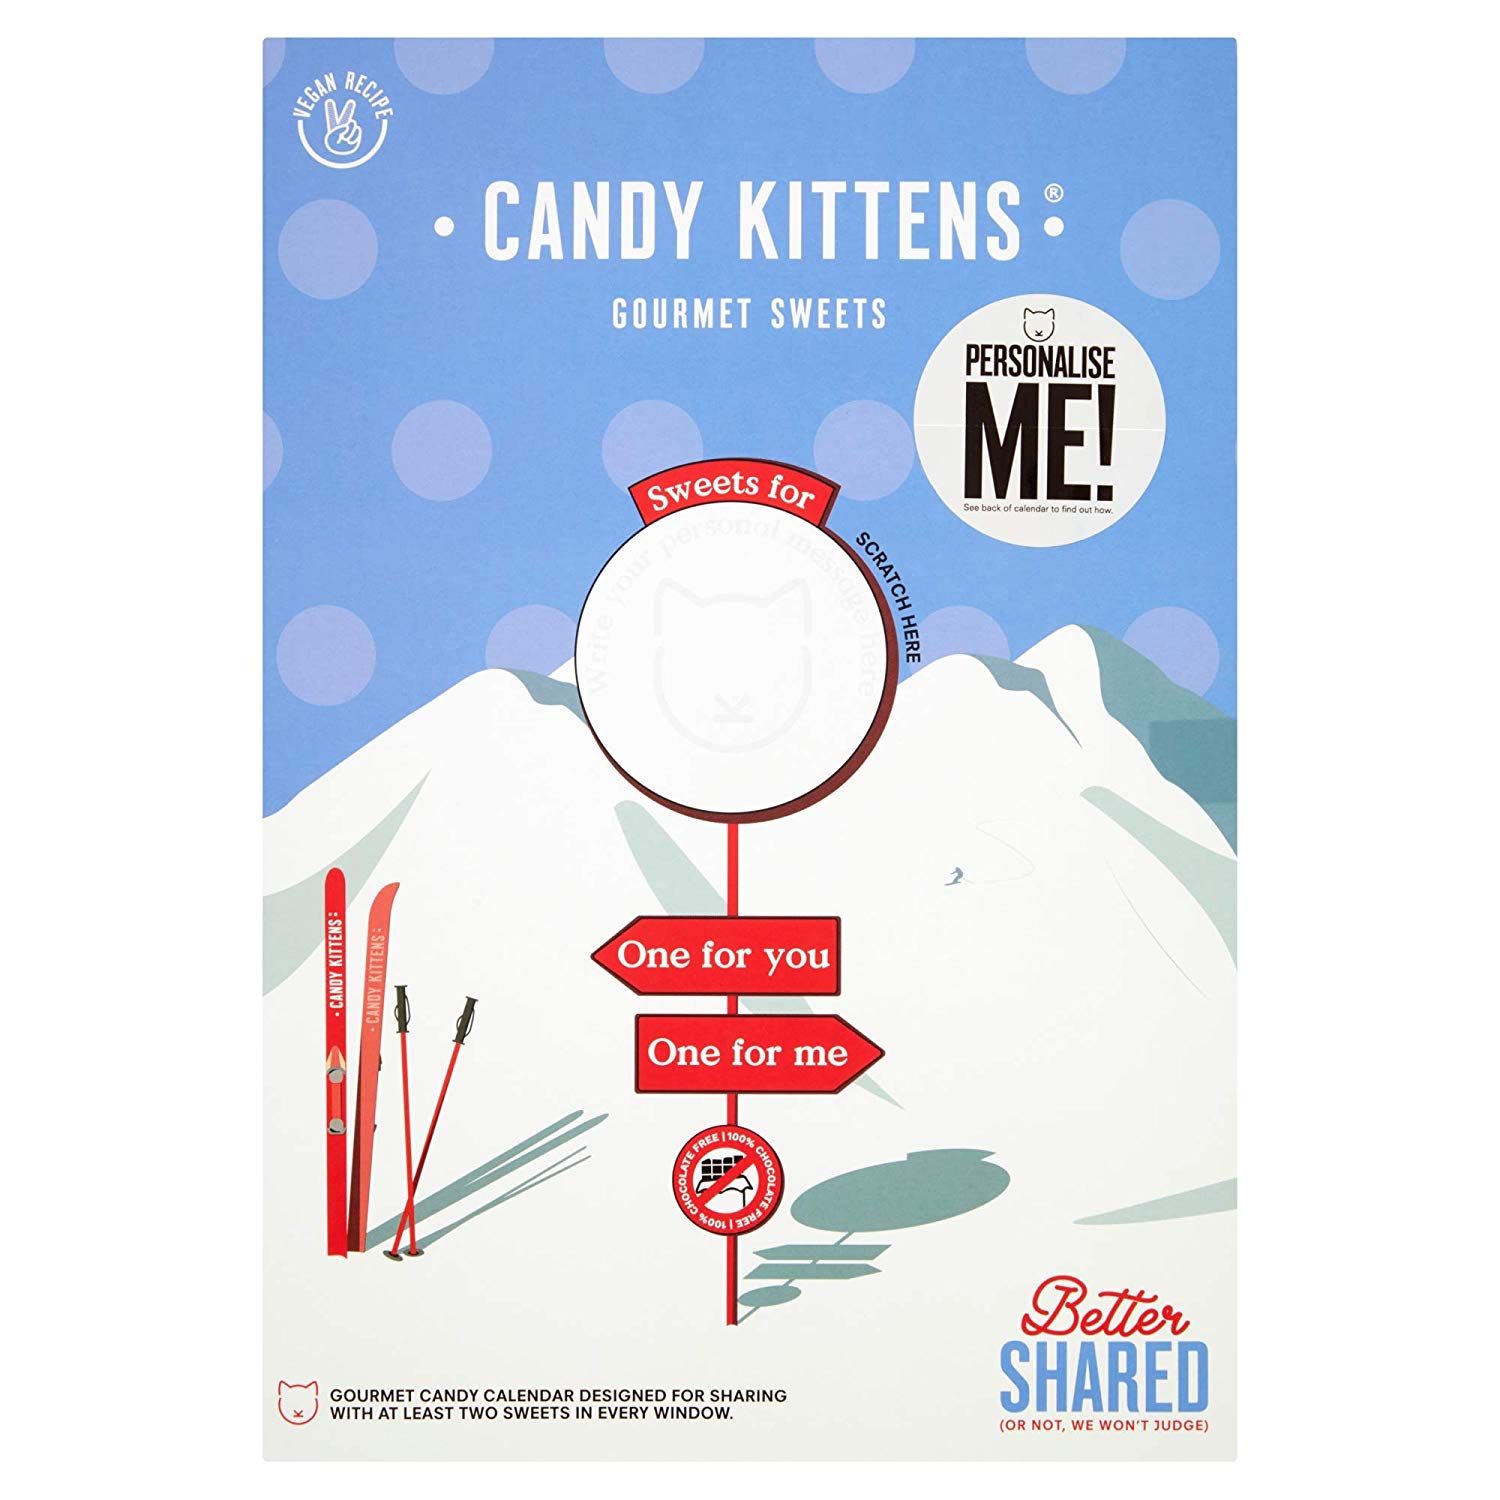 Candy Kittens Advent Calendar 2019